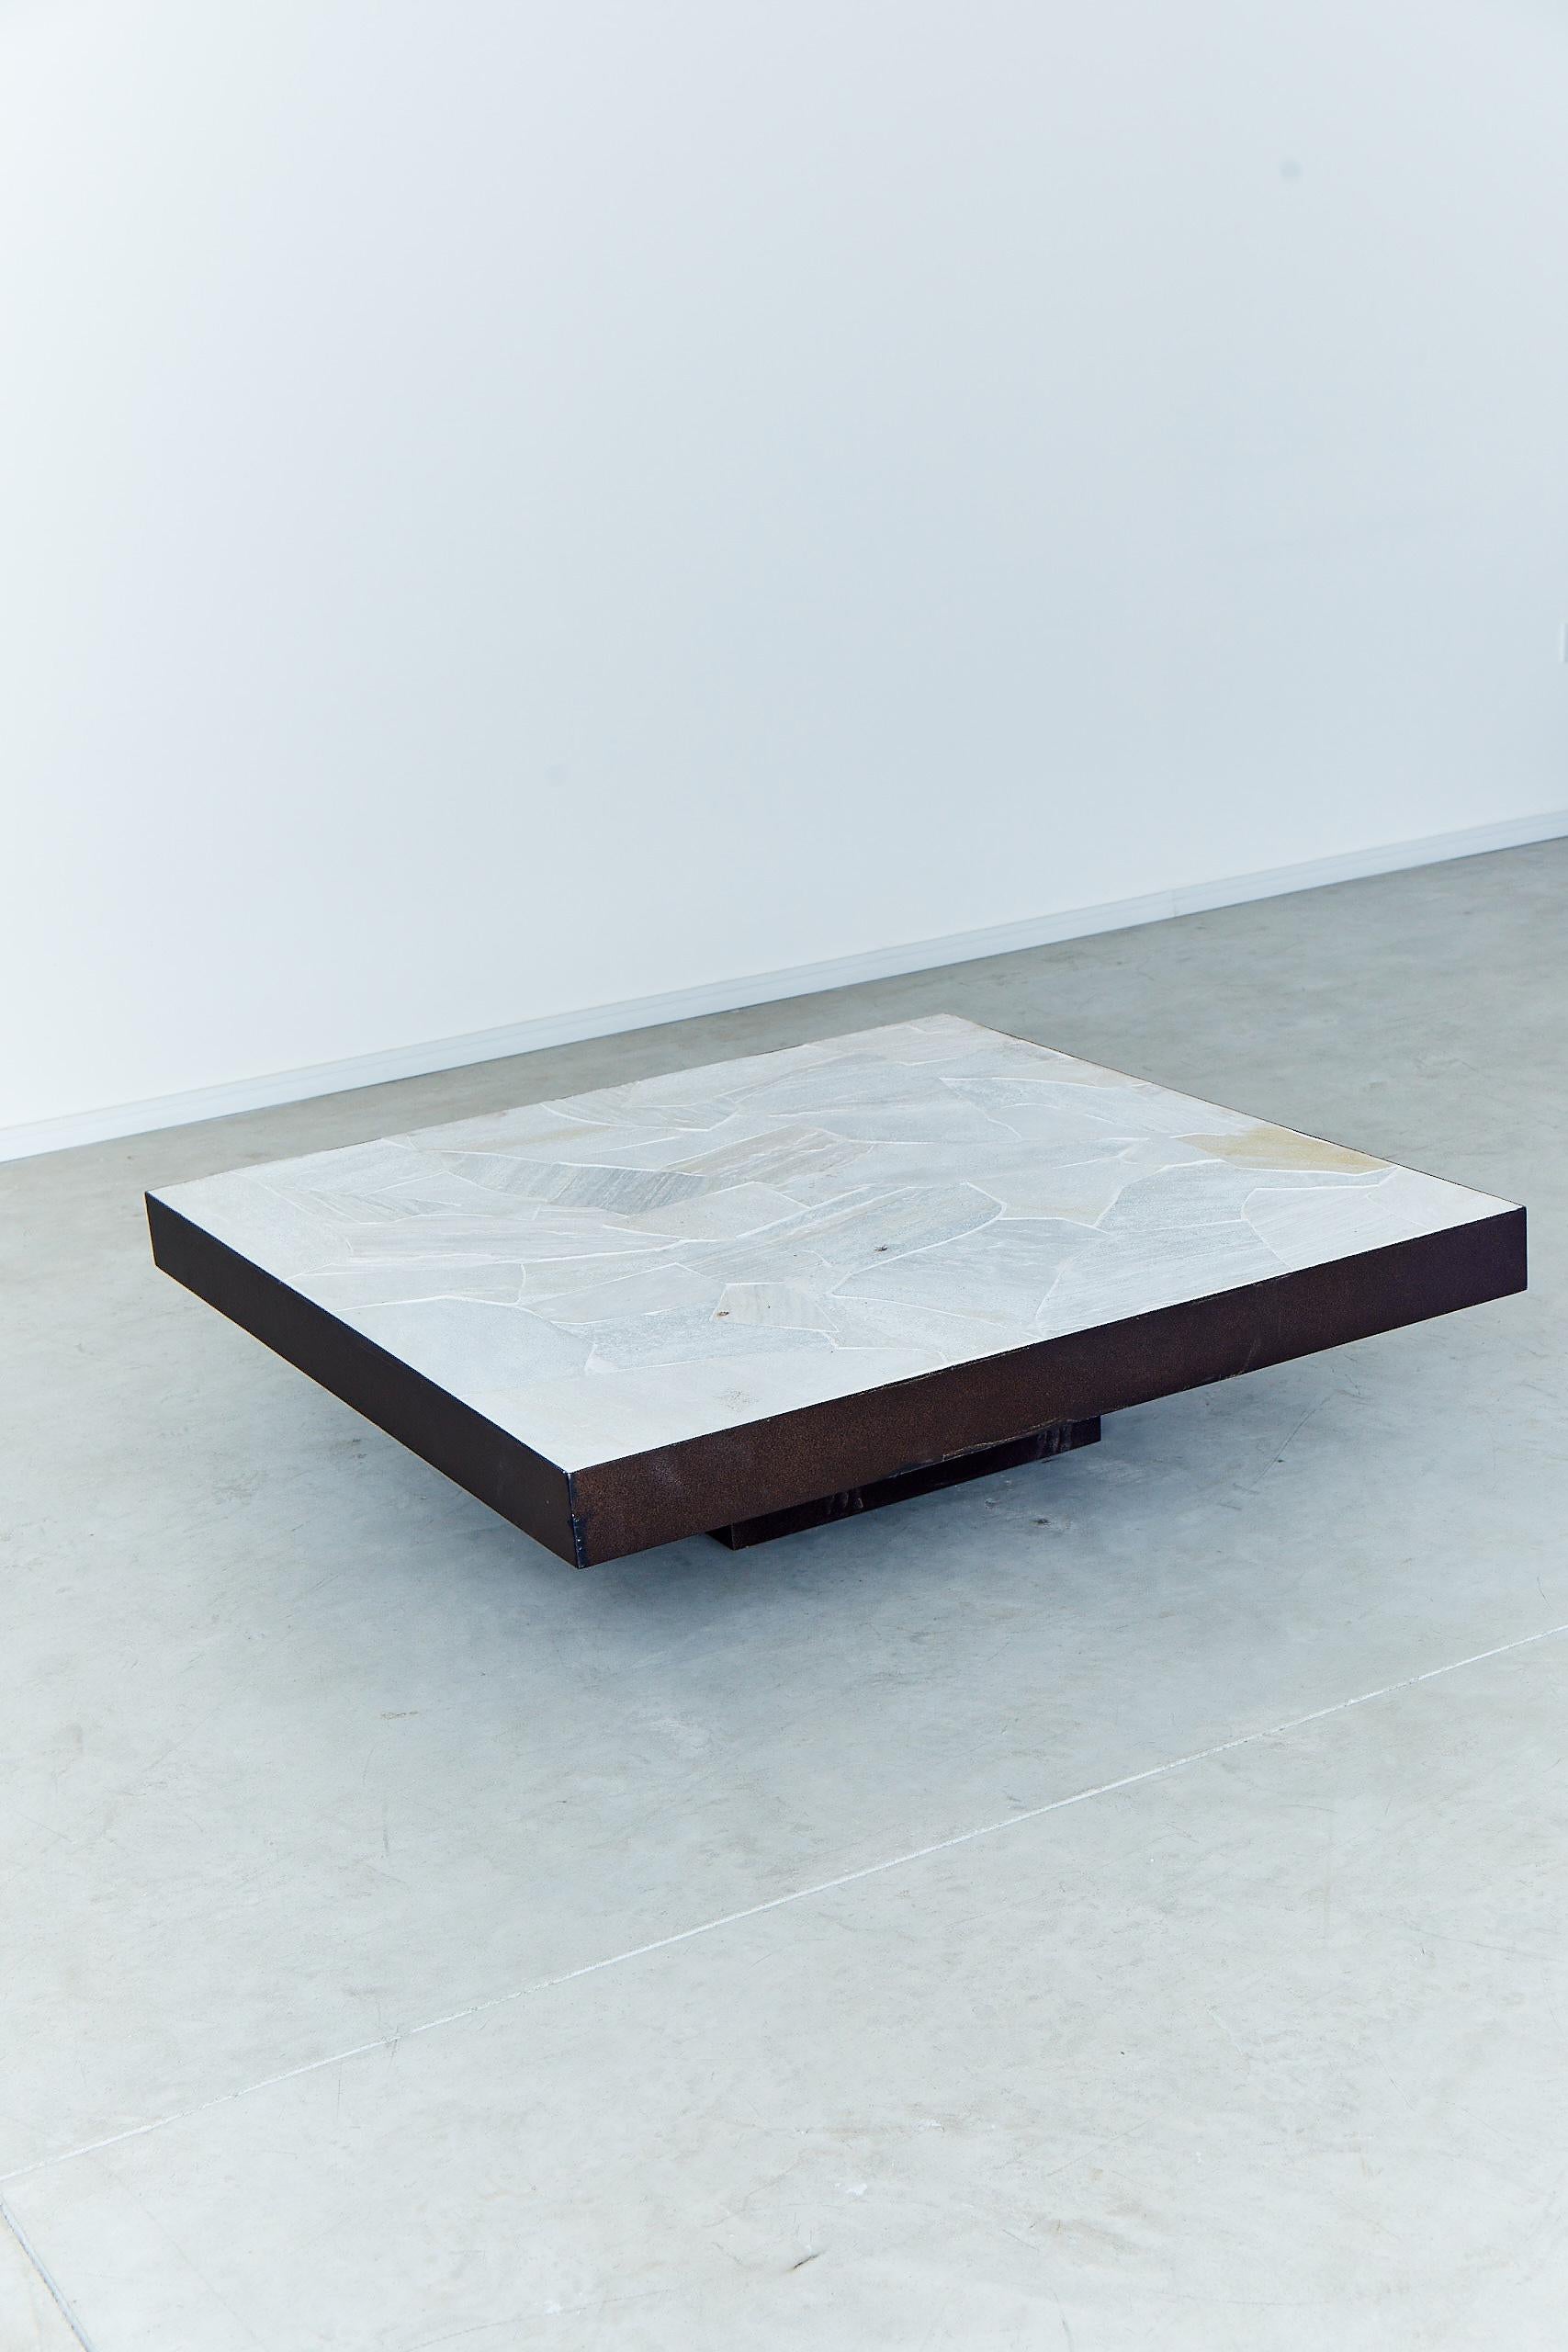 La table basse Tiles, conçue par Arthur Casas, est une création solide et élégante dans une optique de design minimaliste. La structure est en acier et le sommet est fait d'une belle pierre appelée 